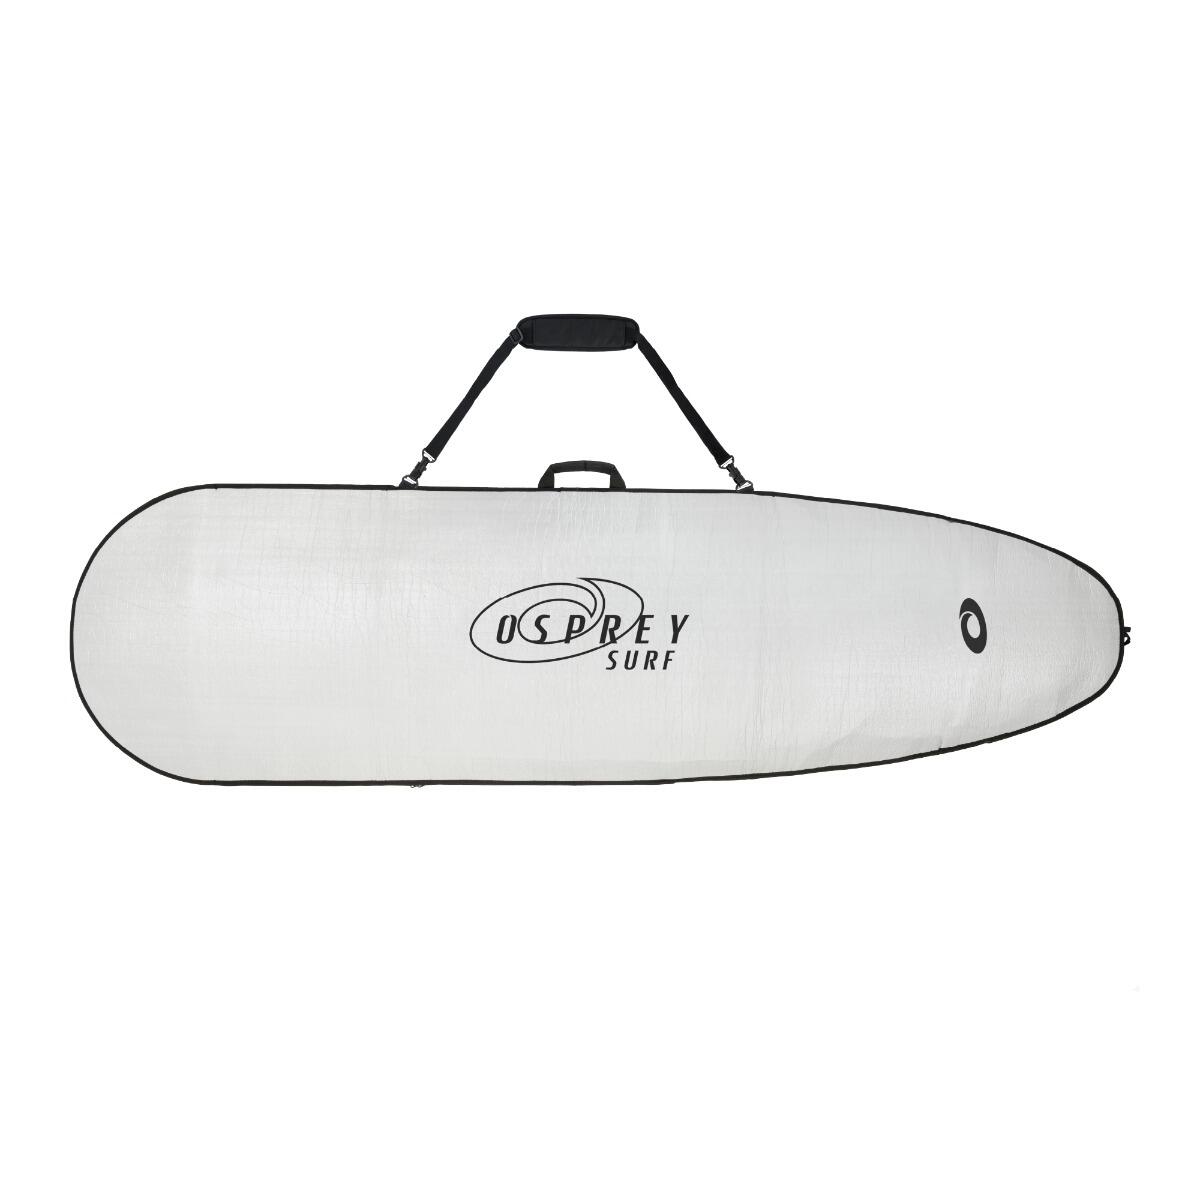 Osprey Surfboard Bag, Portable Protective Travel Bag for Surfboards 1/4